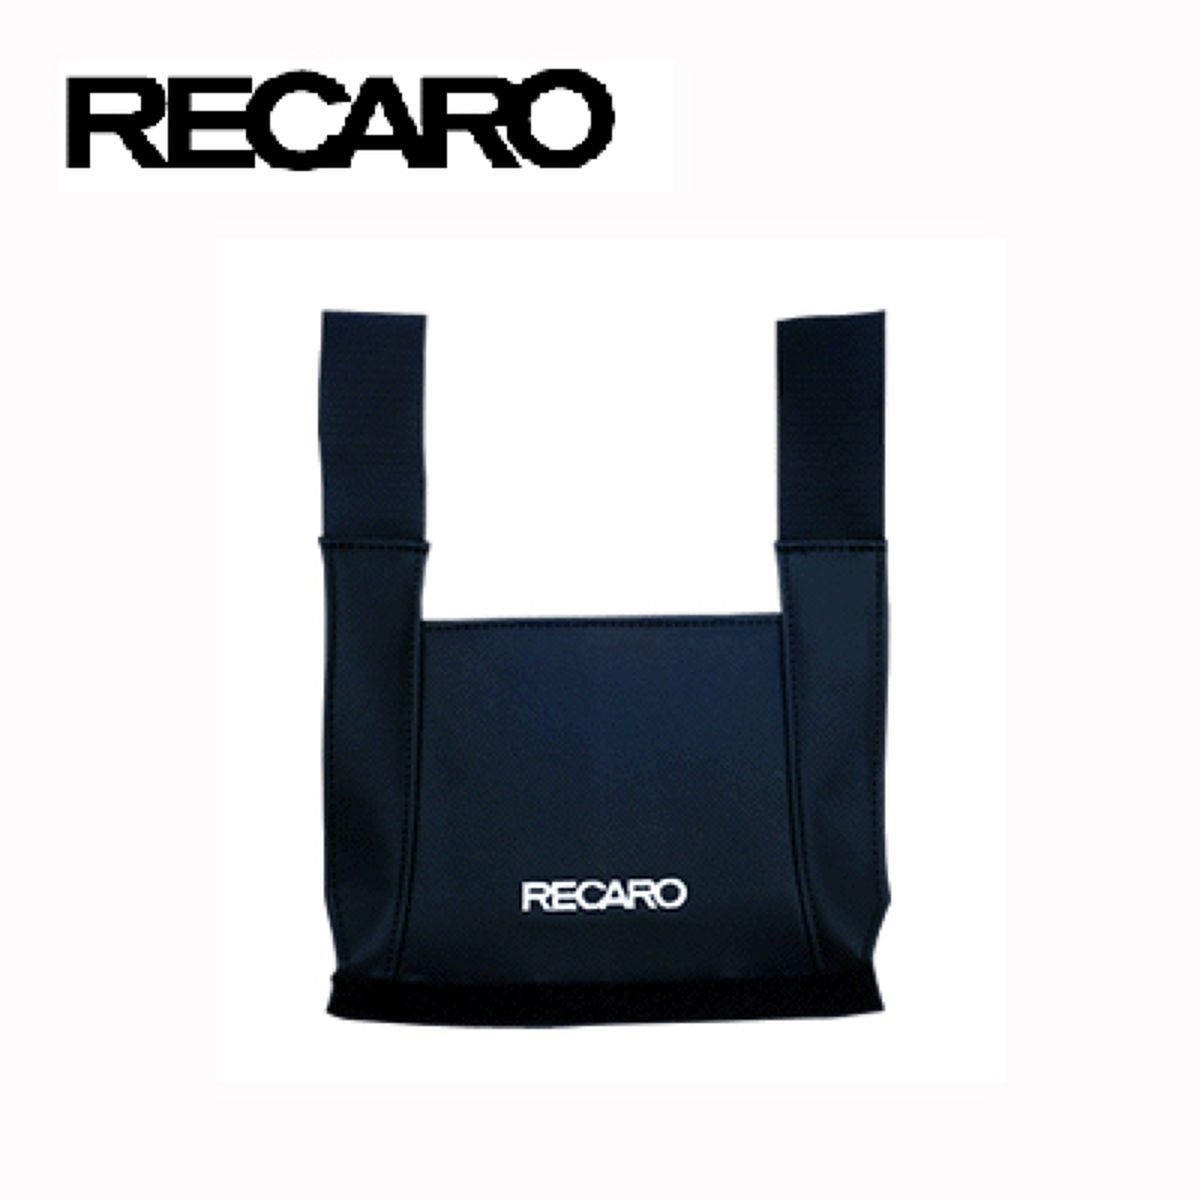 RECARO レカロ サイドプロテクター ブラック 7216966